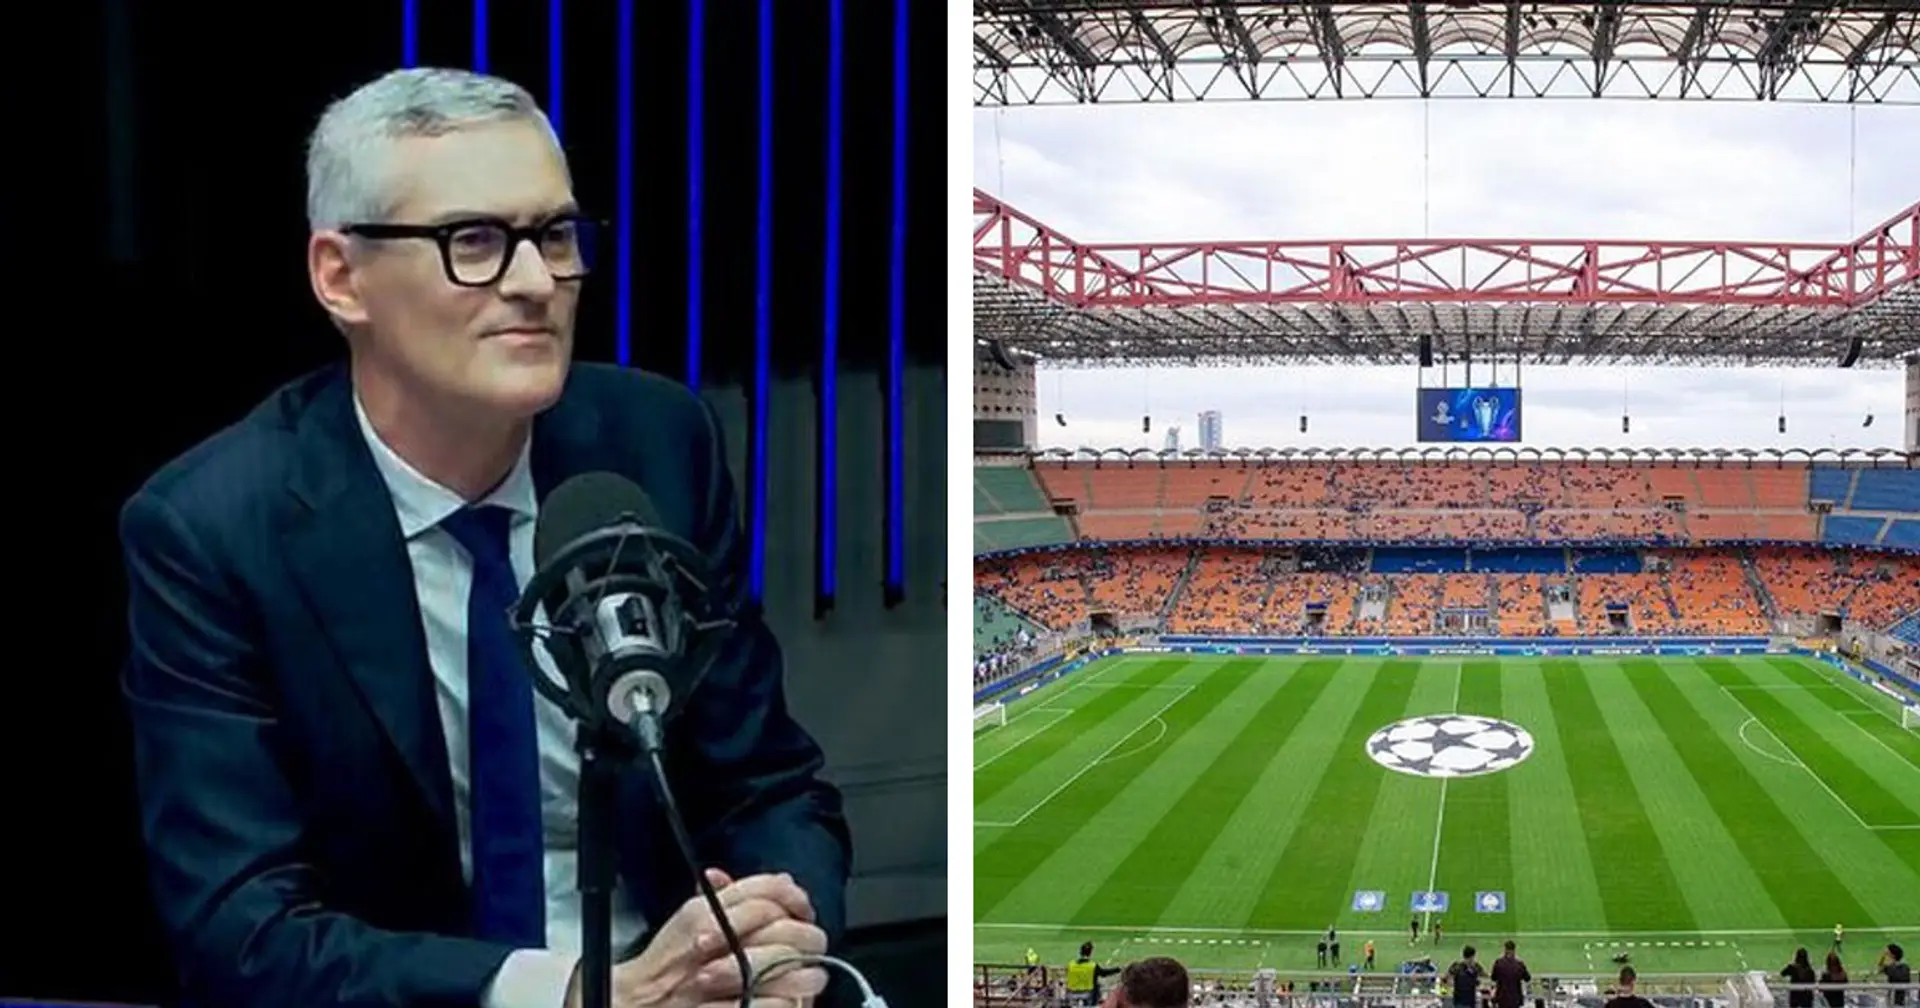 Il CEO dell'Inter: "Delusi da lunghe discussioni per San Siro", poi l'annuncio sulle alternative per lo stadio